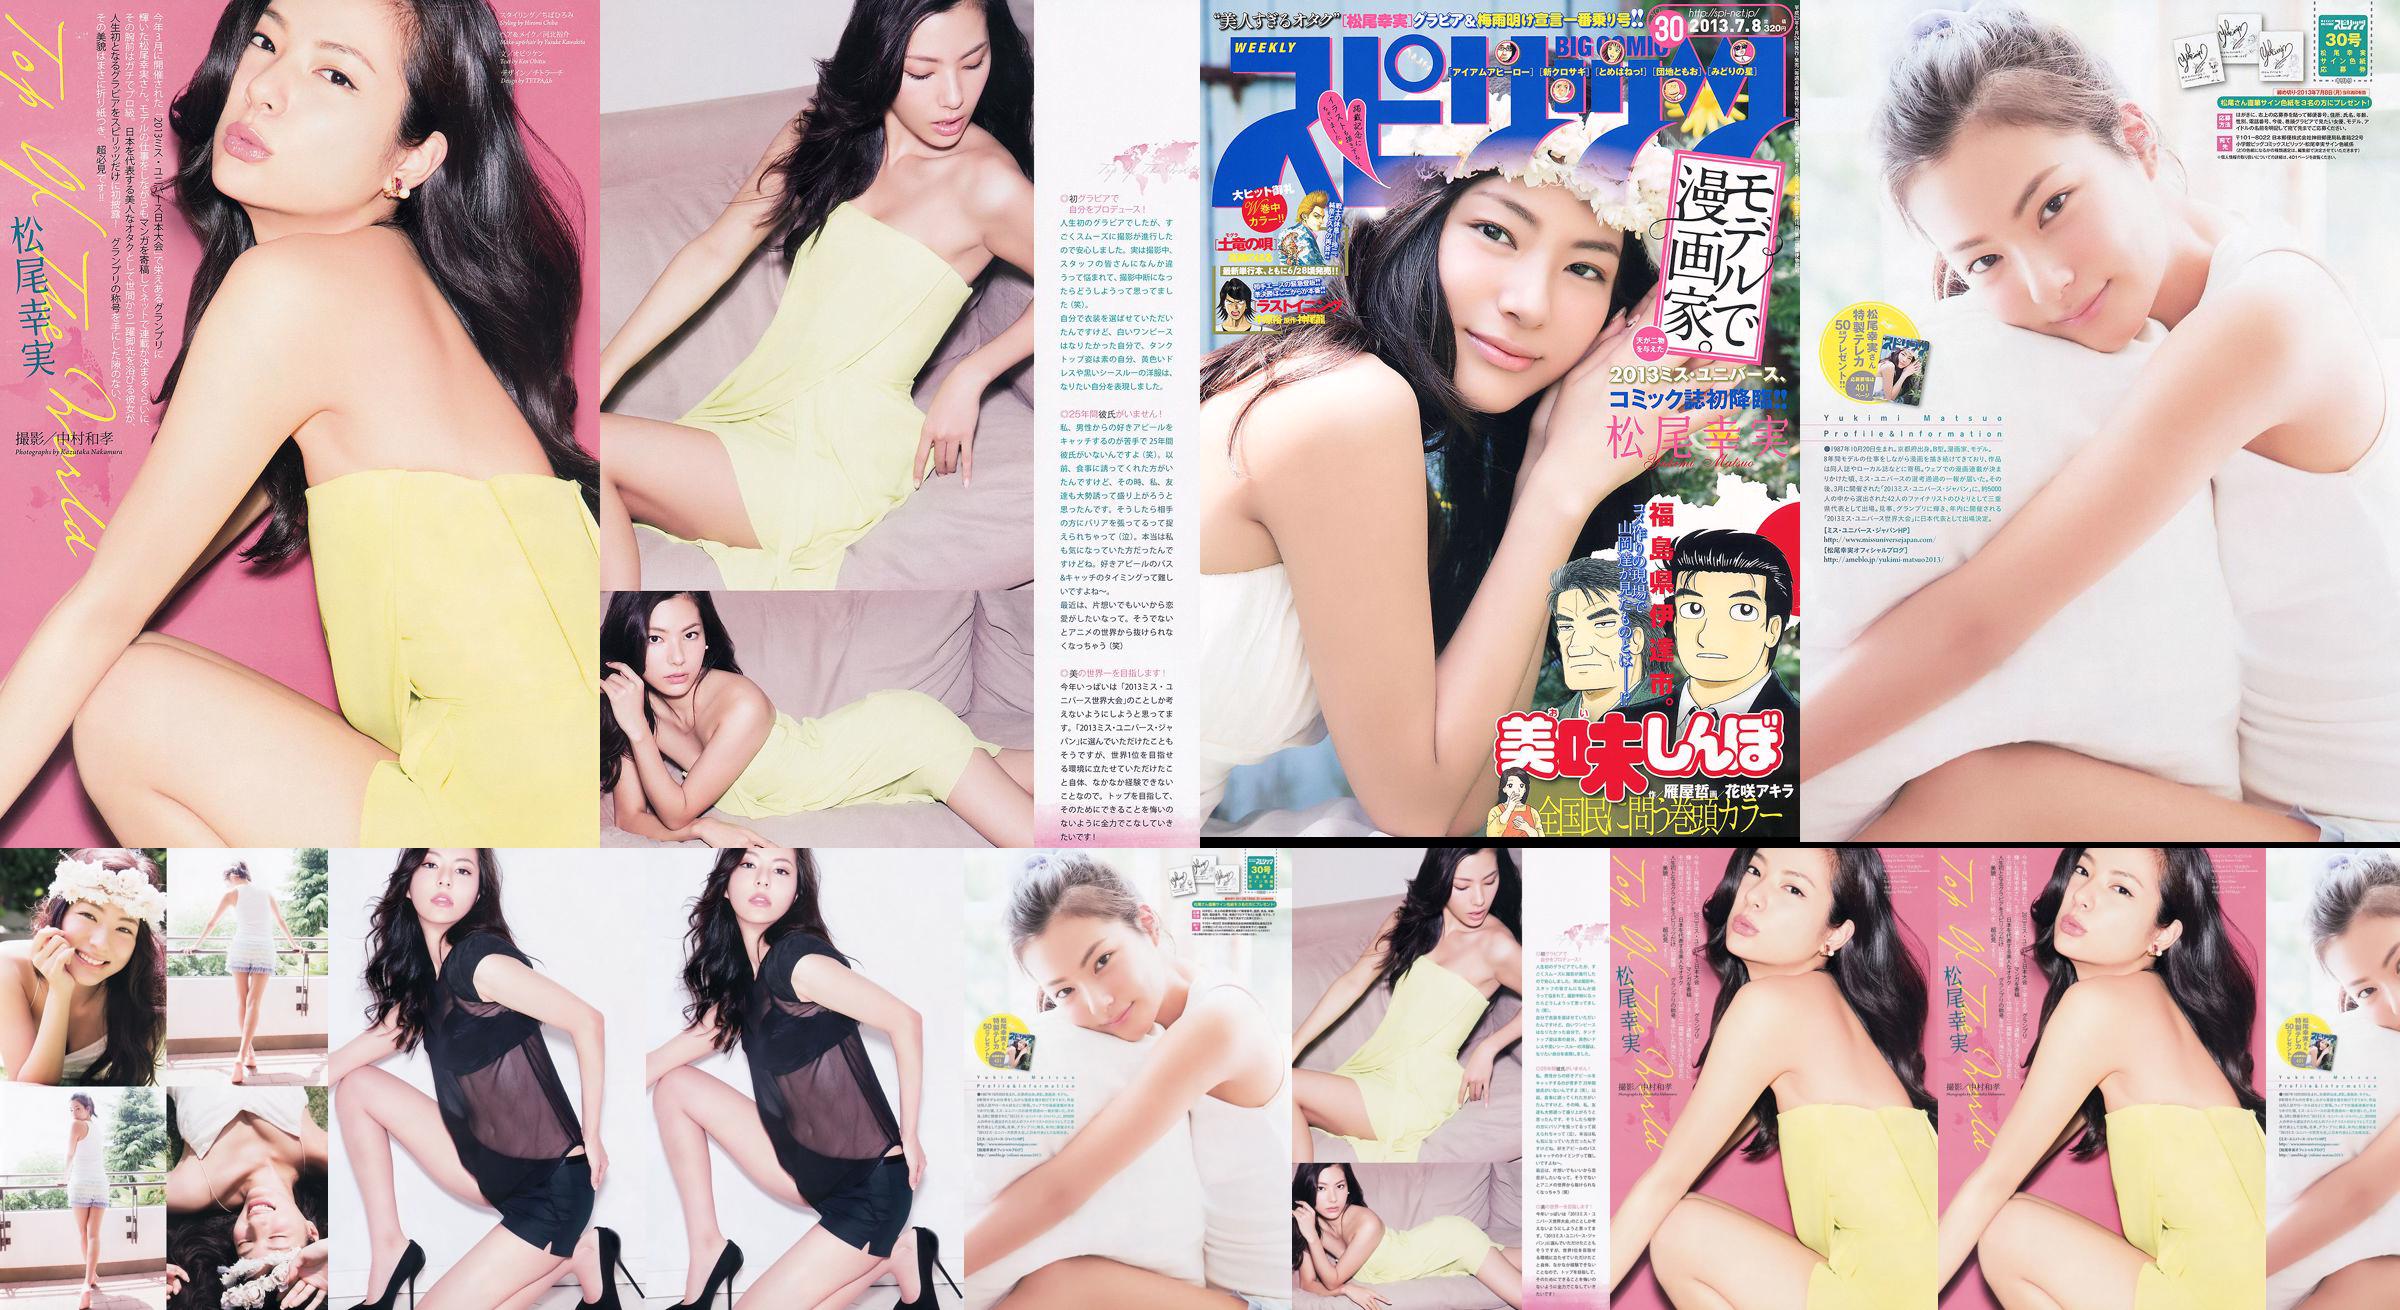 [Weekly Big Comic Spirits] Komi Matsuo 2013 No.30 Photo Magazine No.3c0831 Página 1